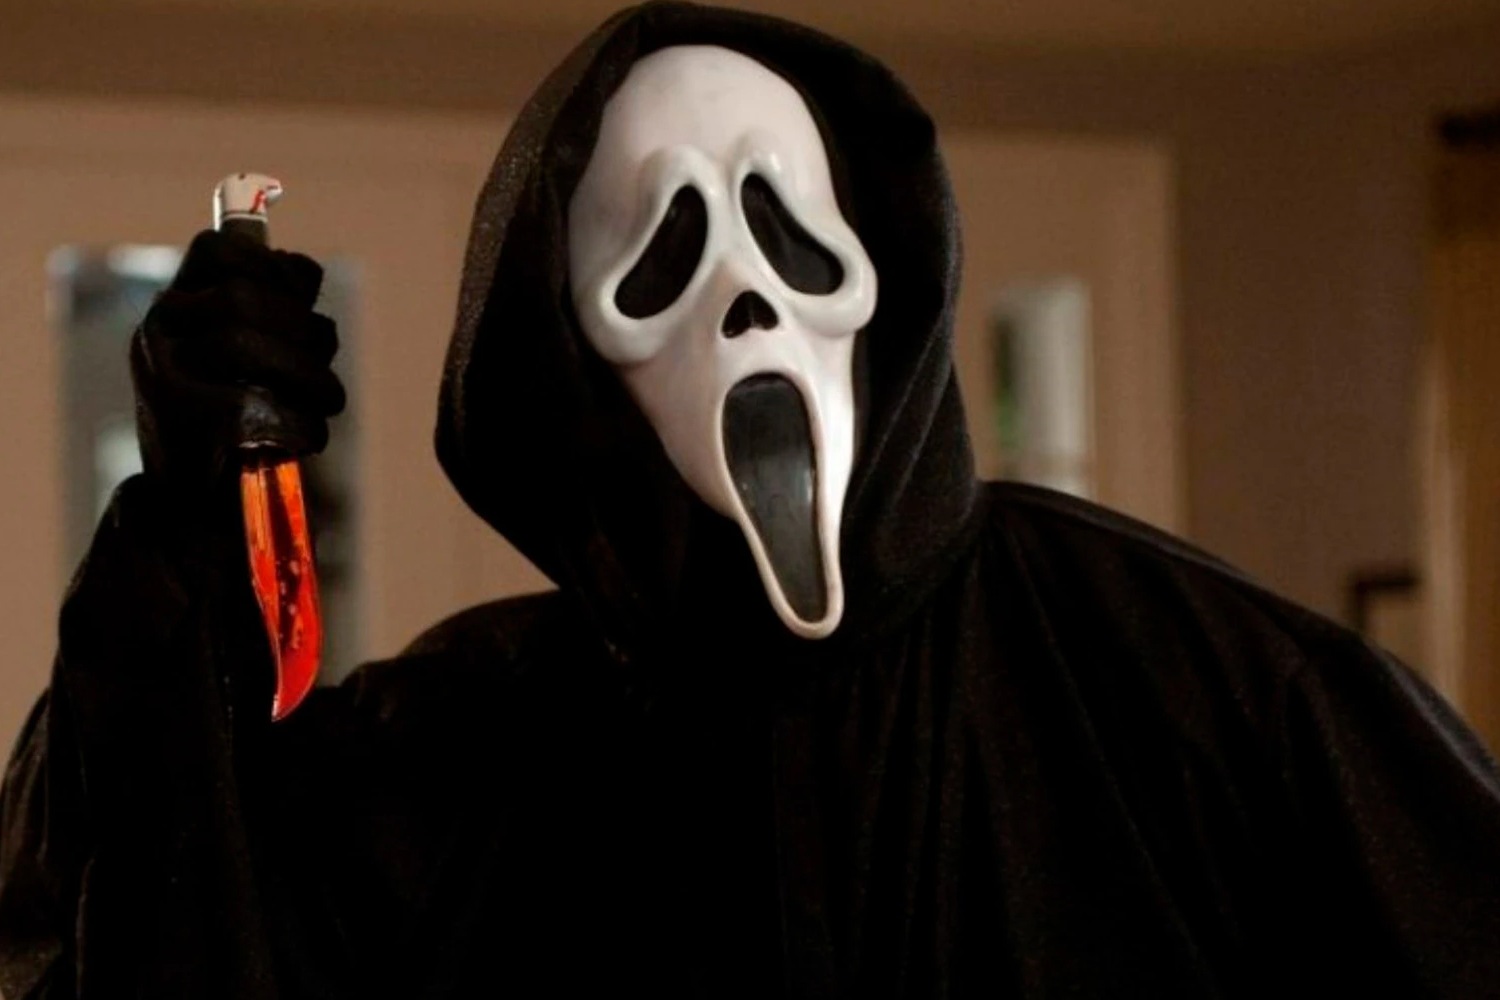 Os 30 melhores filmes de terror antigos para o Halloween - Forbes